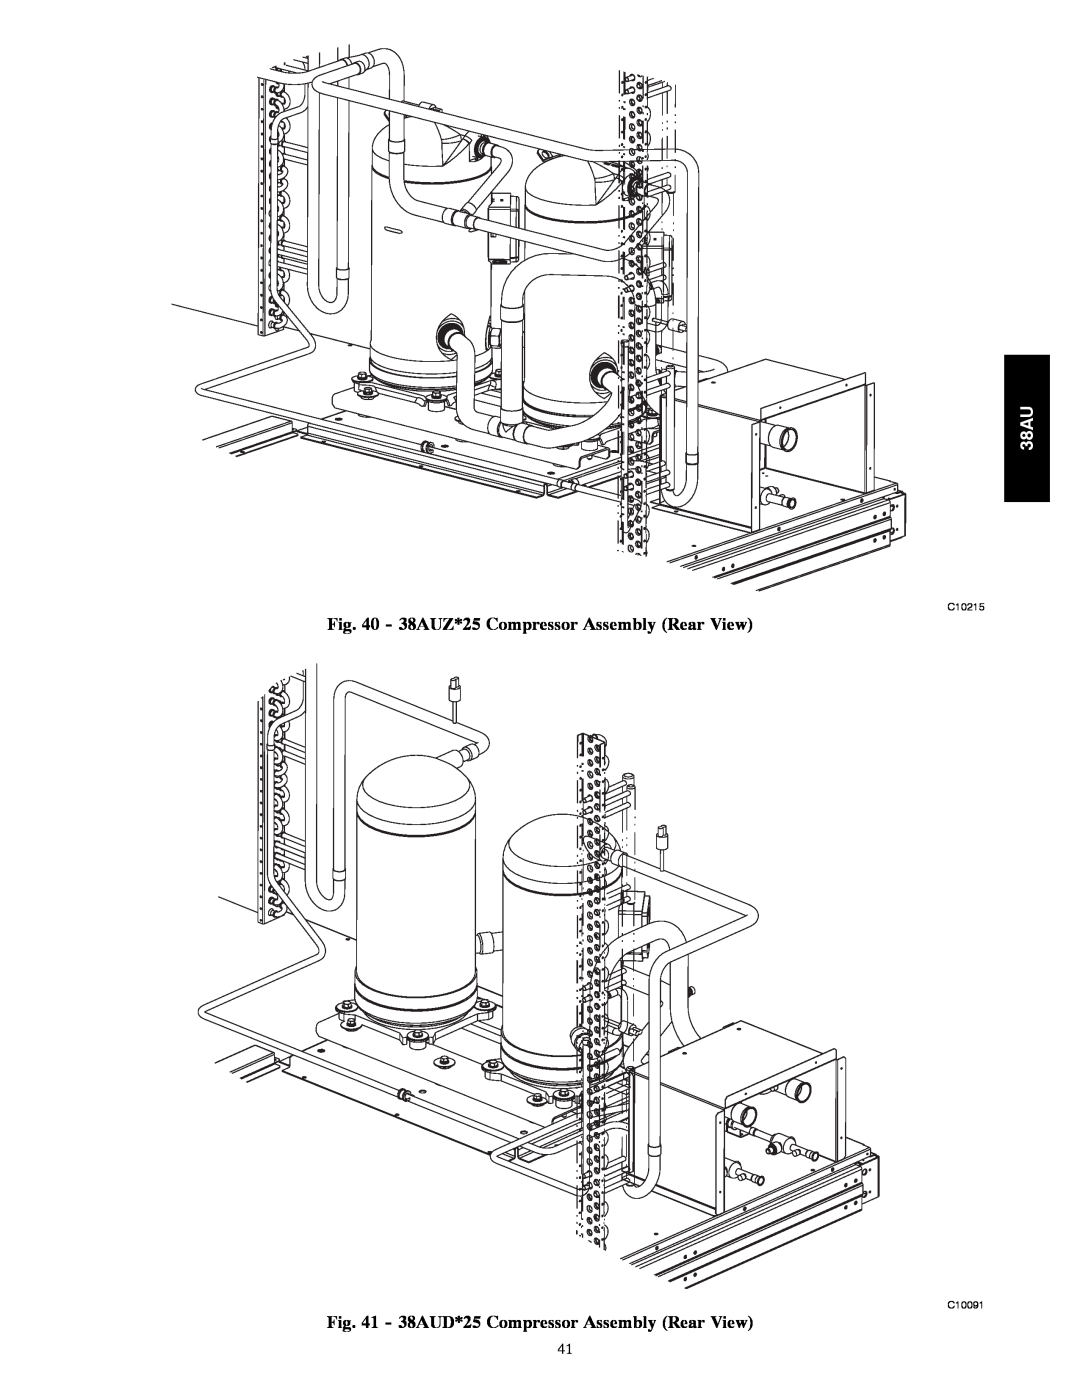 Carrier appendix 38AUZ*25 Compressor Assembly Rear View, 38AUD*25 Compressor Assembly Rear View, C10215, C10091 